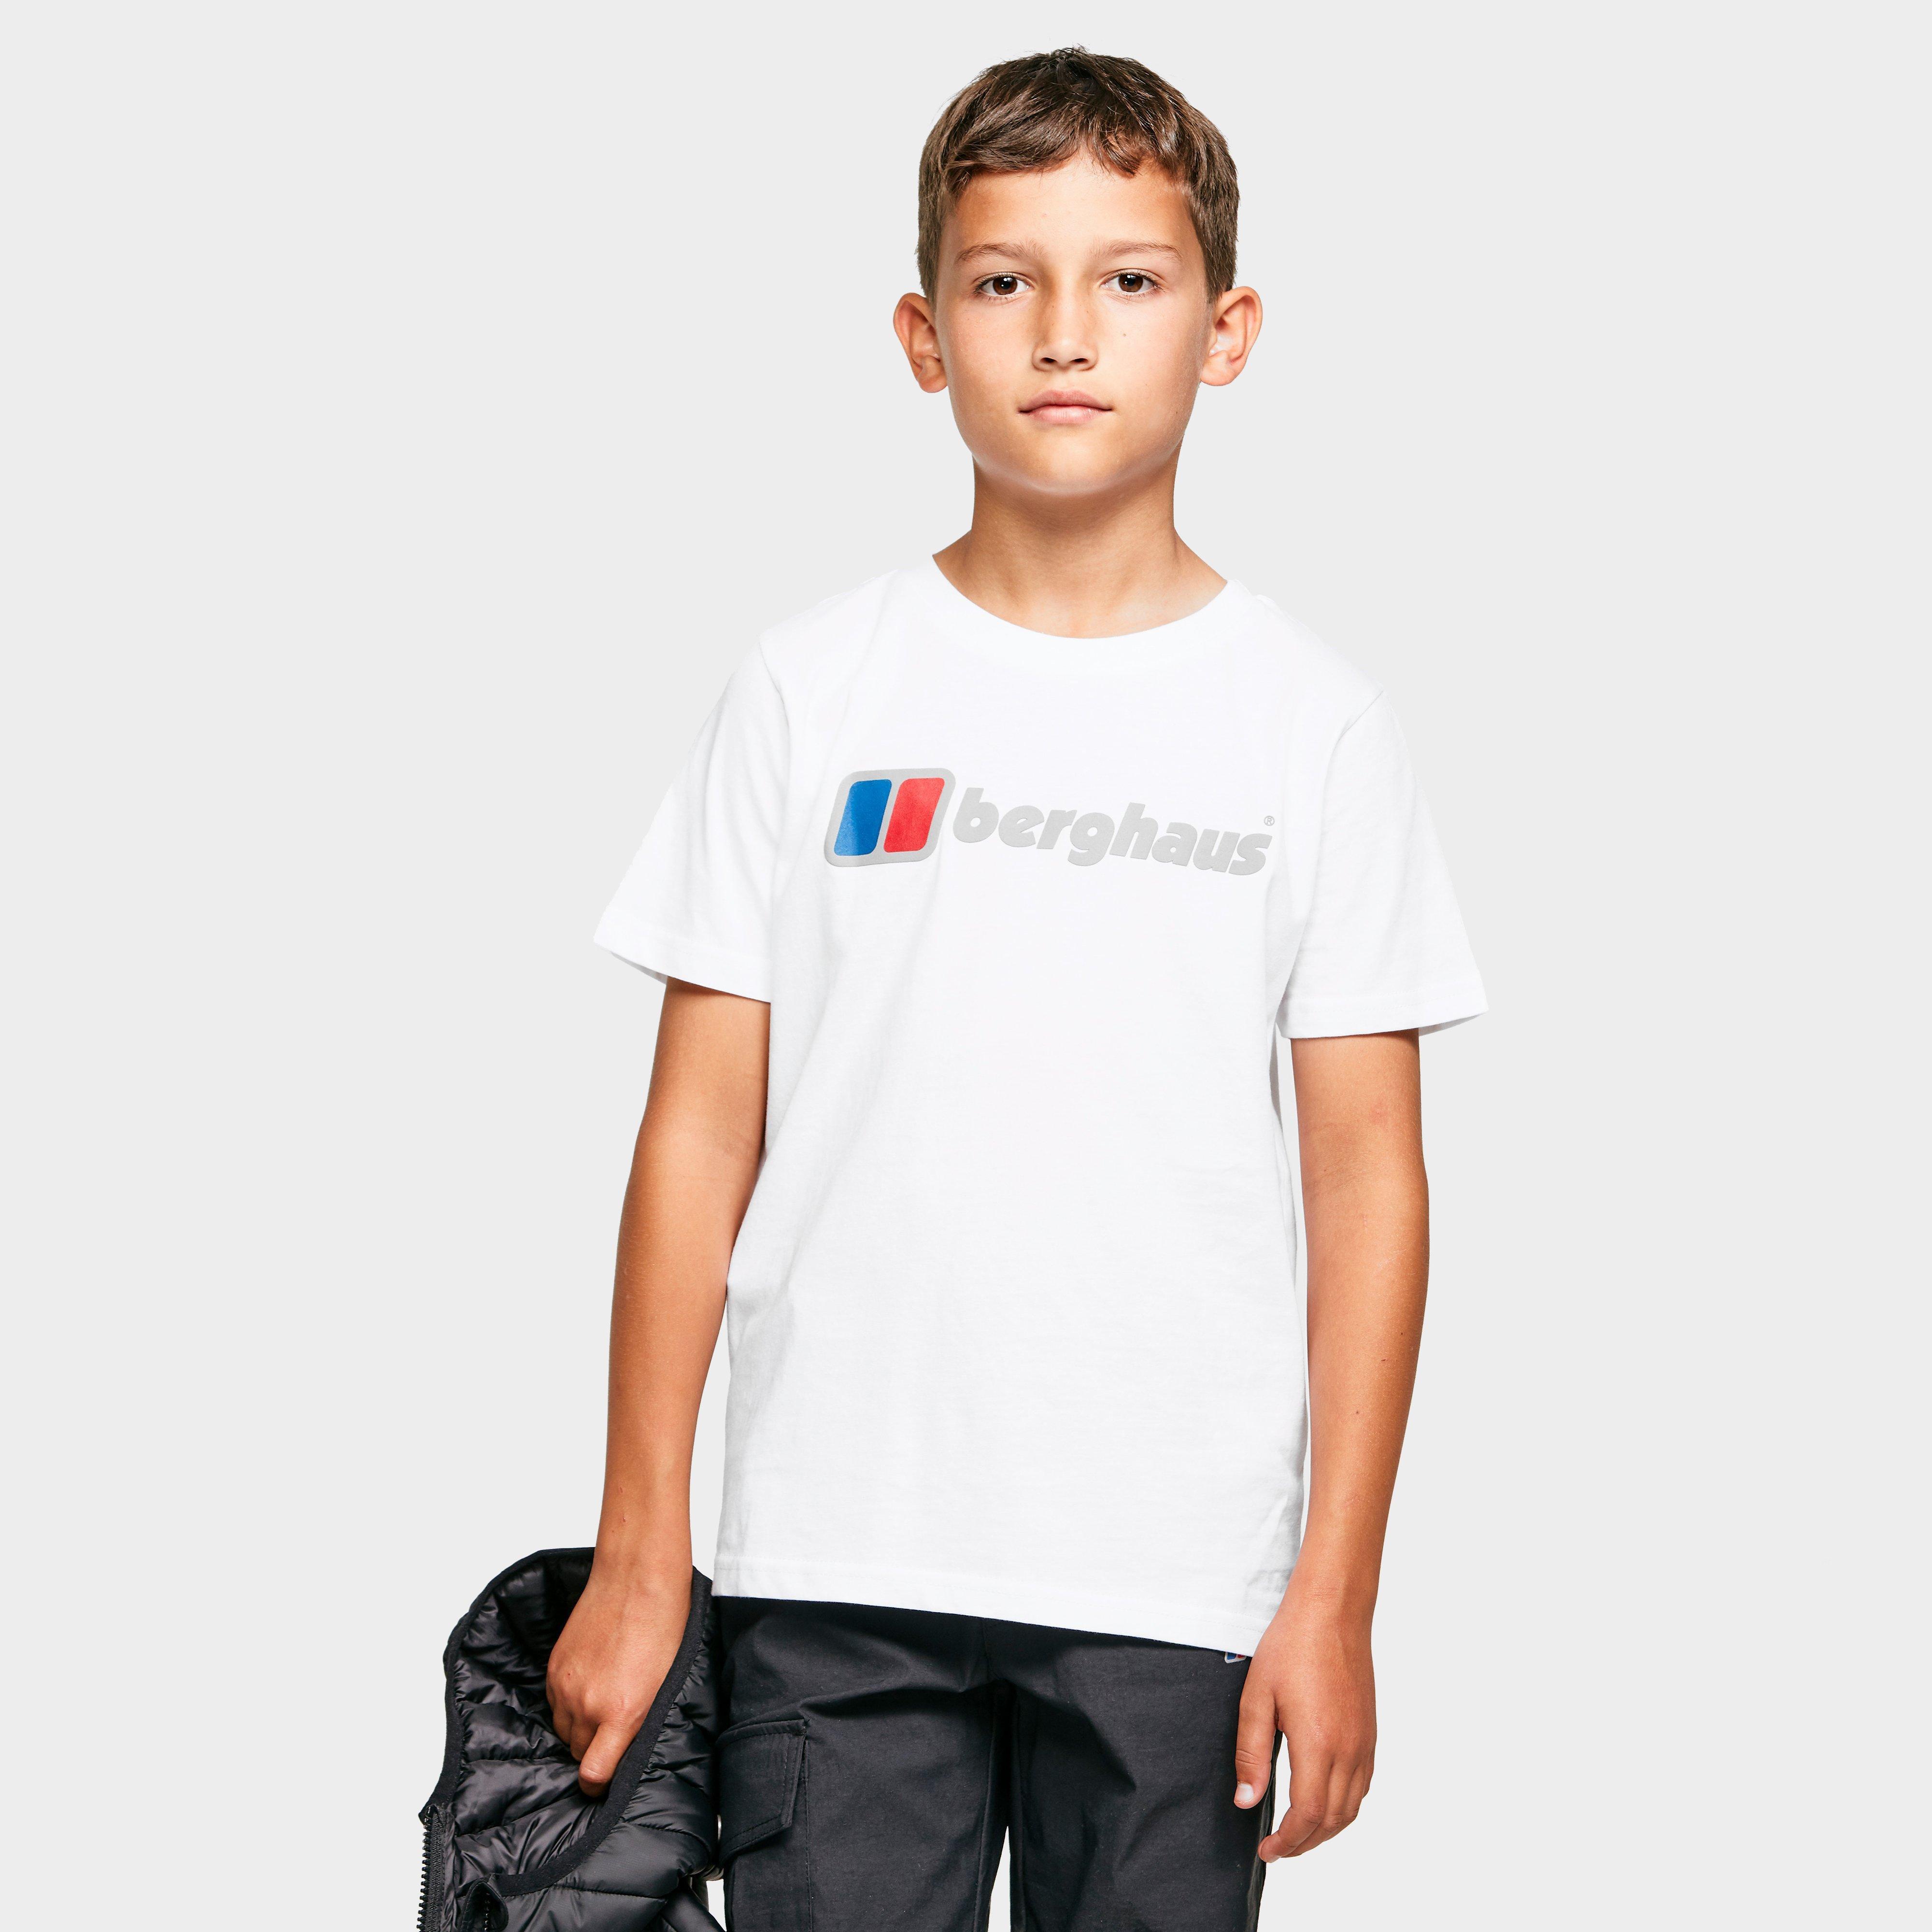 Shirt New Berghaus Kids Interest Short Sleeve T